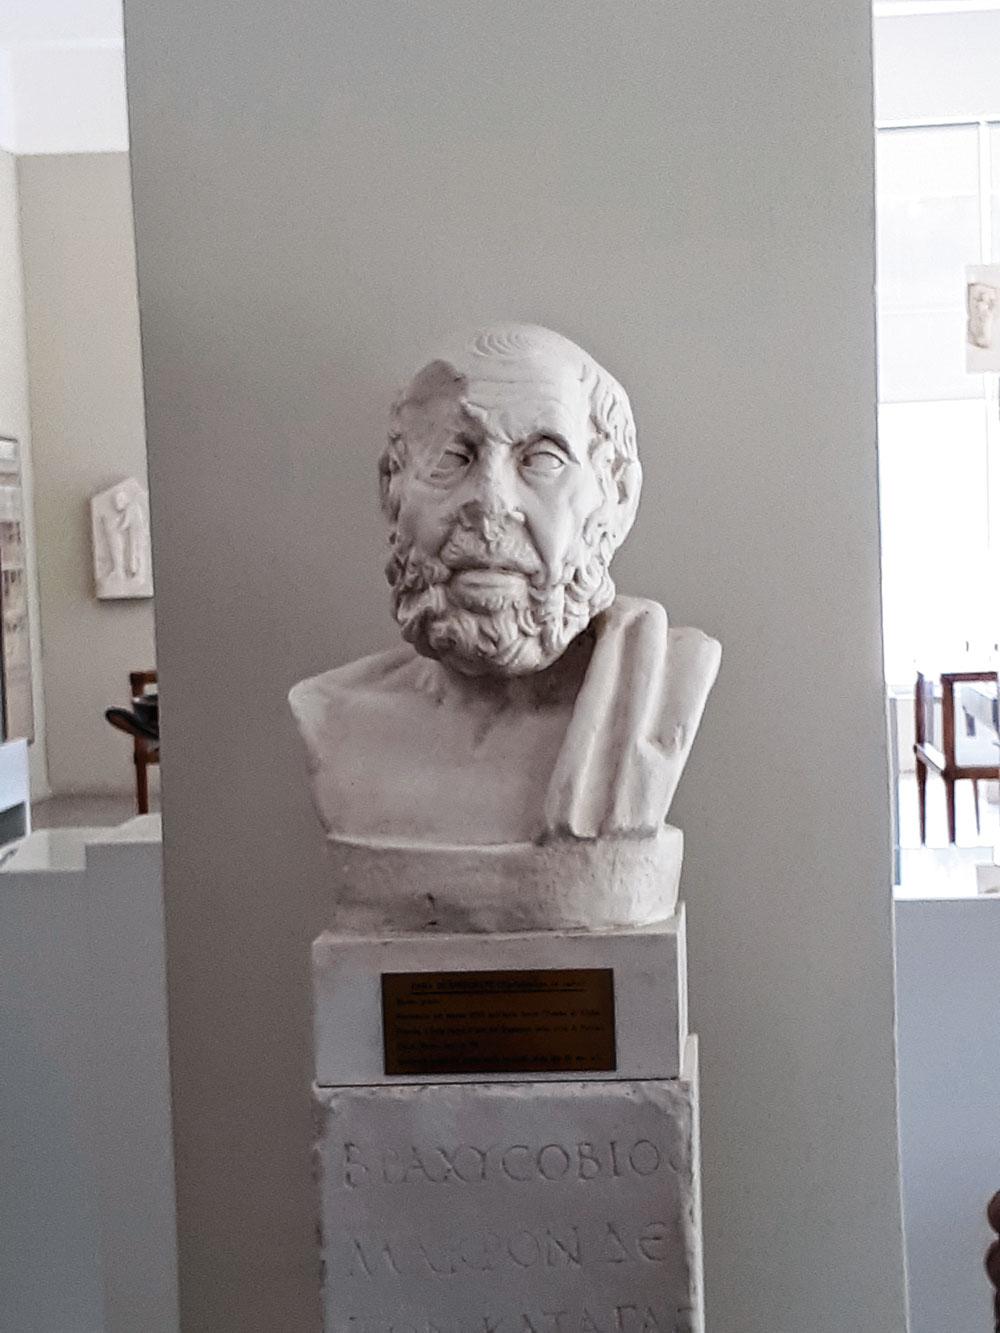 Hippocrate est considéré comme le père de la médecine clinique. Kos abrite encore un platane sous lequel il aurait enseigné.